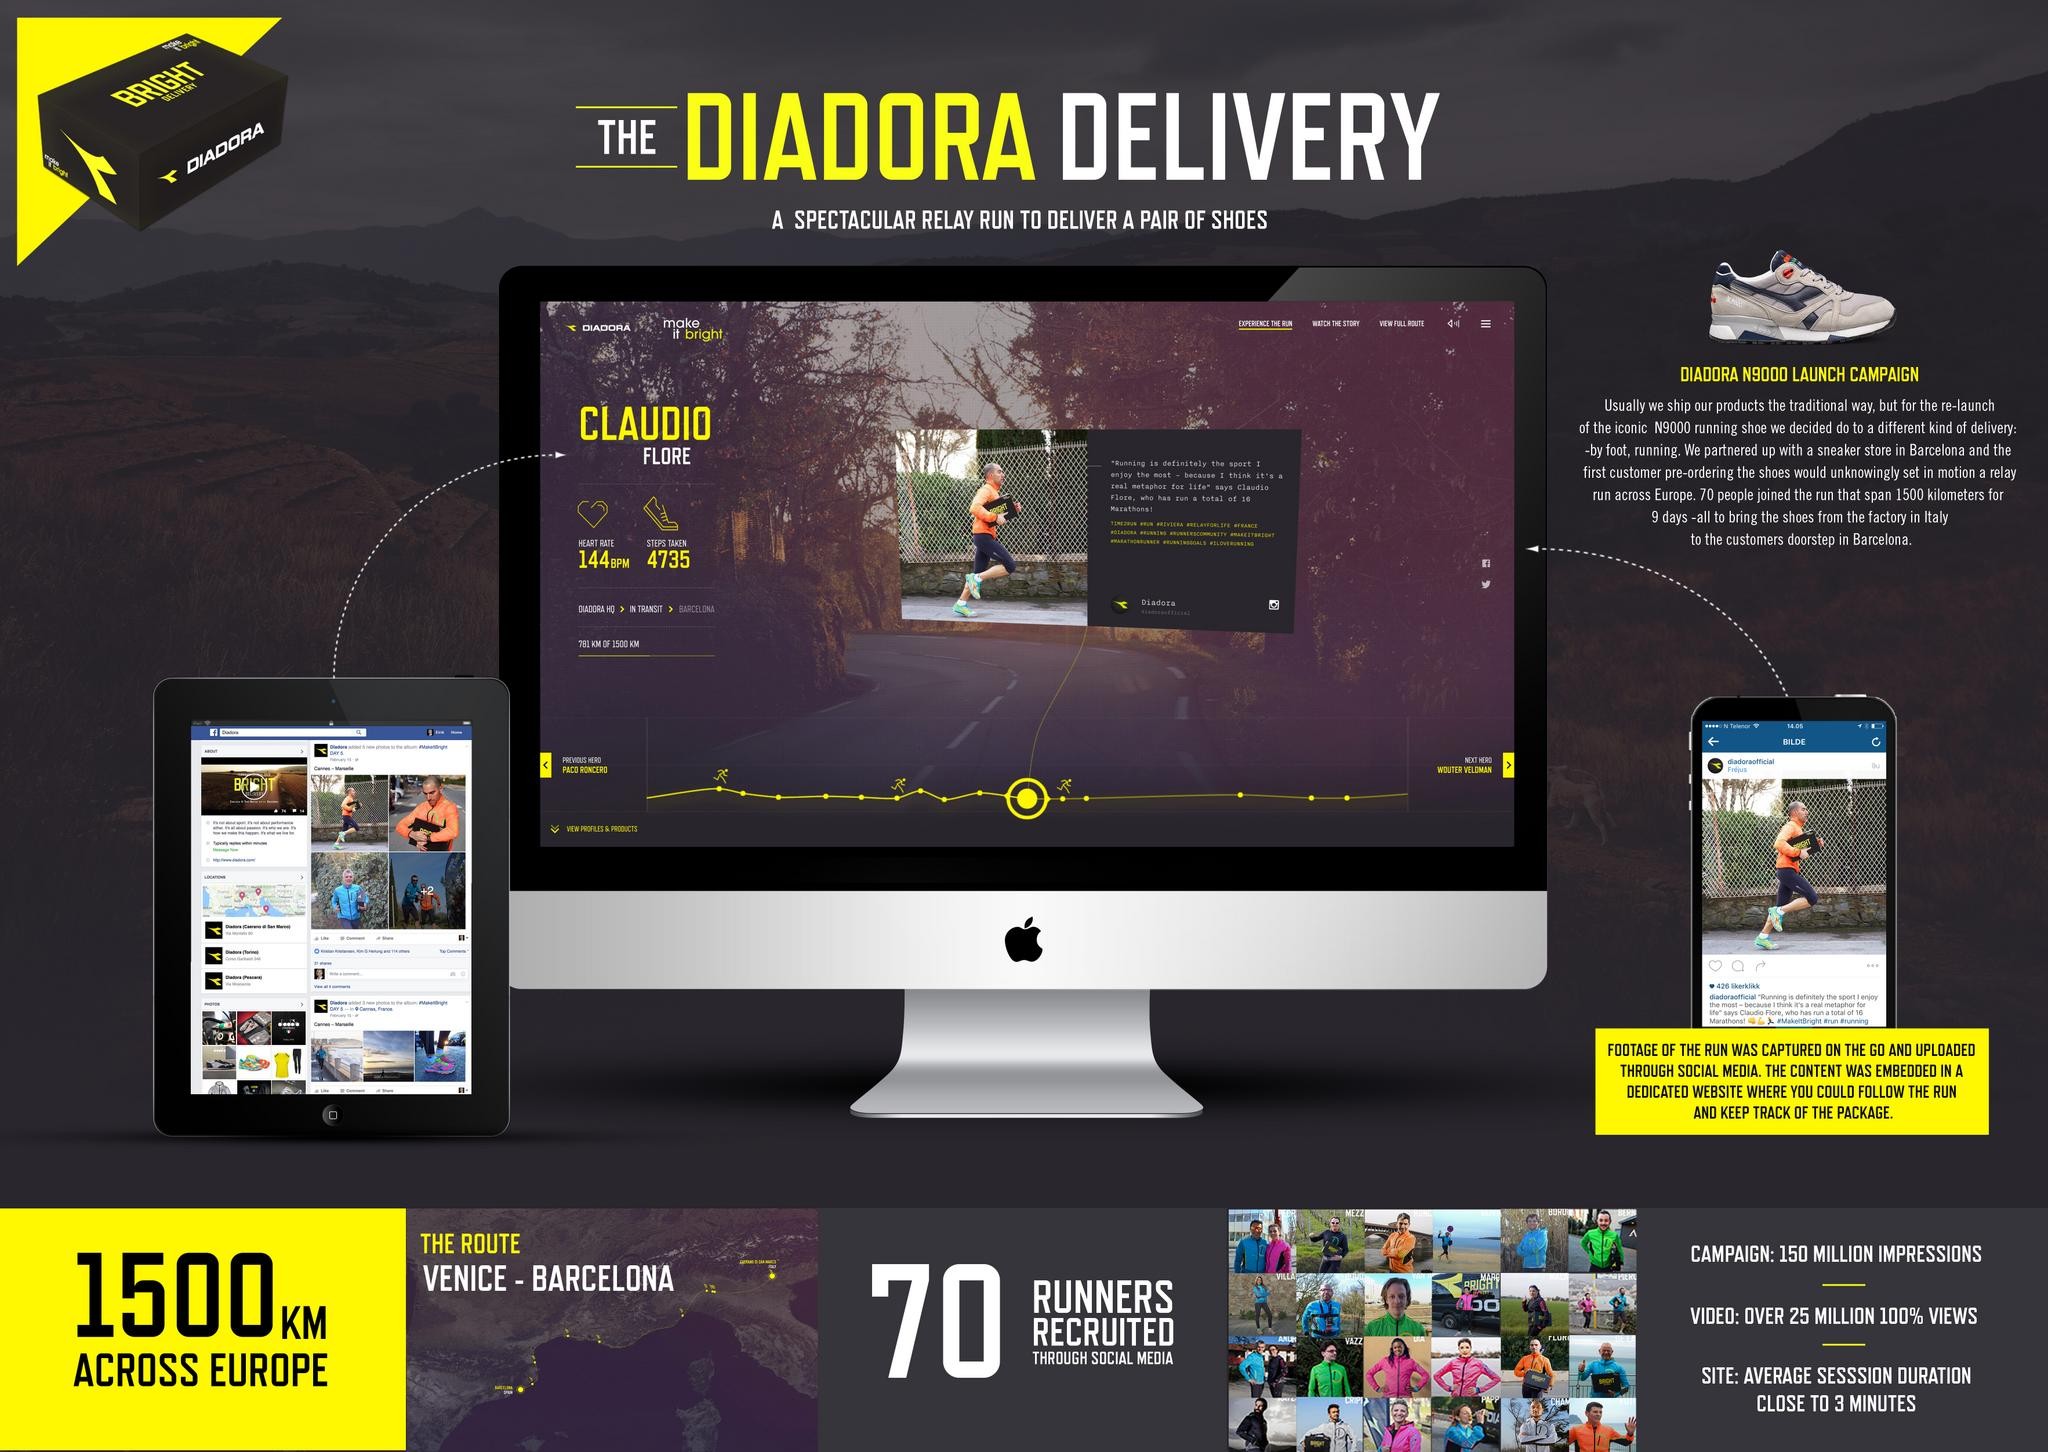 The Diadora Delivery